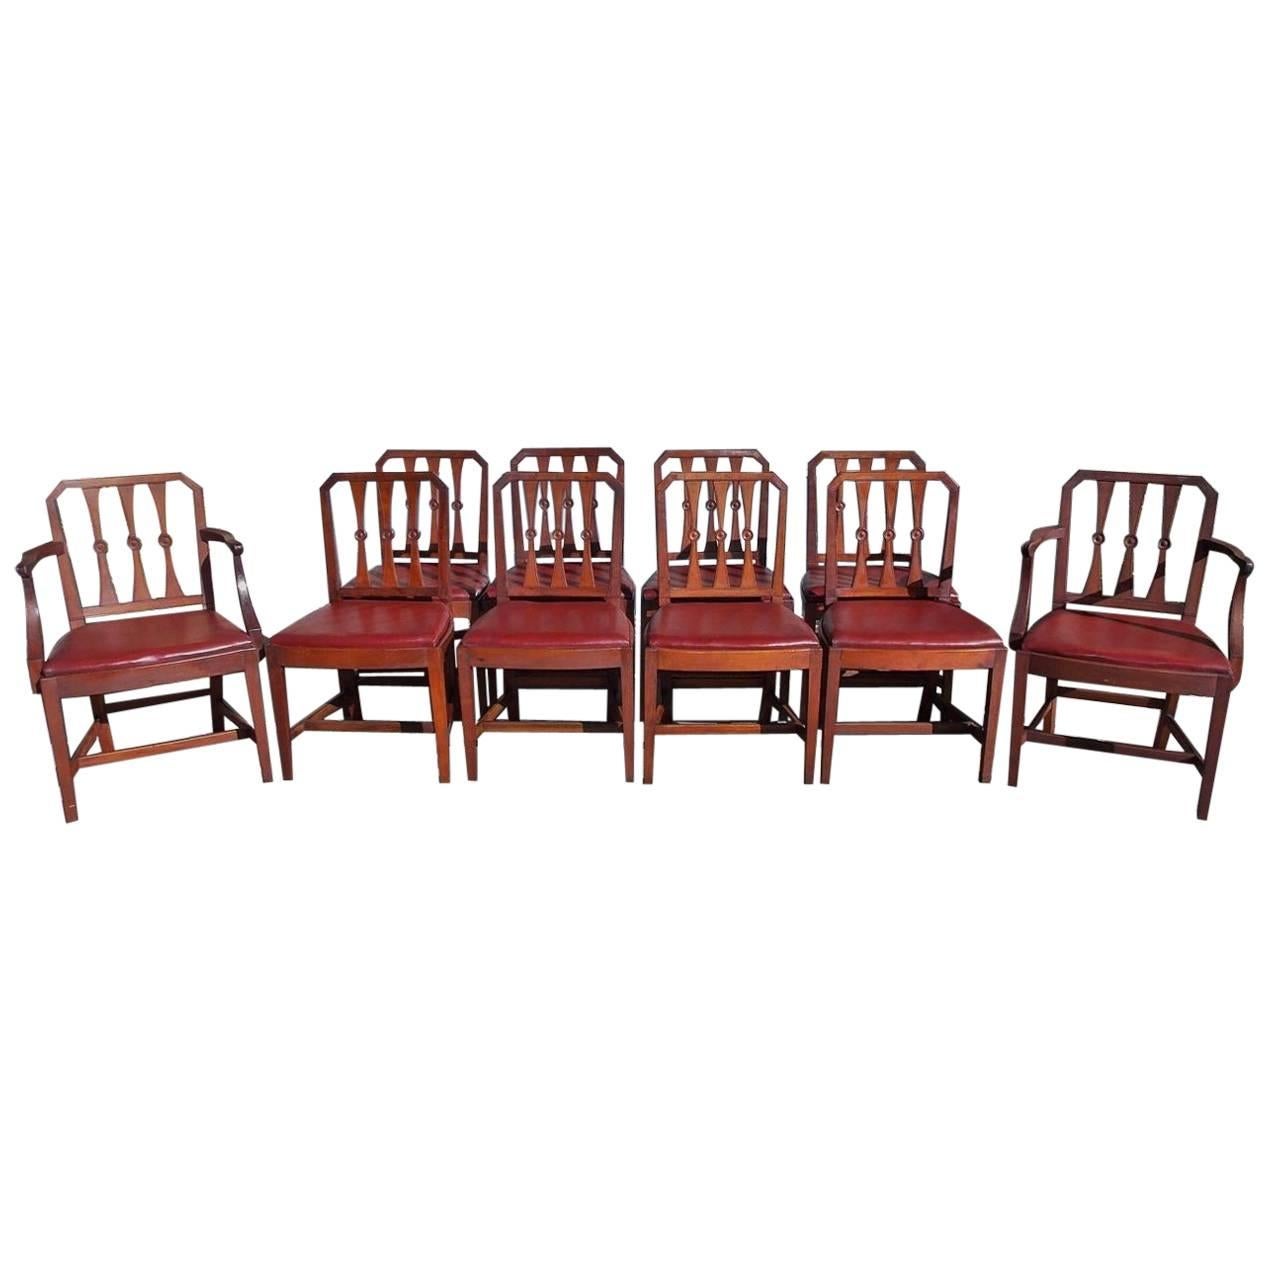 Ensemble de dix chaises de salle à manger en acajou de style Régence anglaise avec sièges en cuir, vers 1800